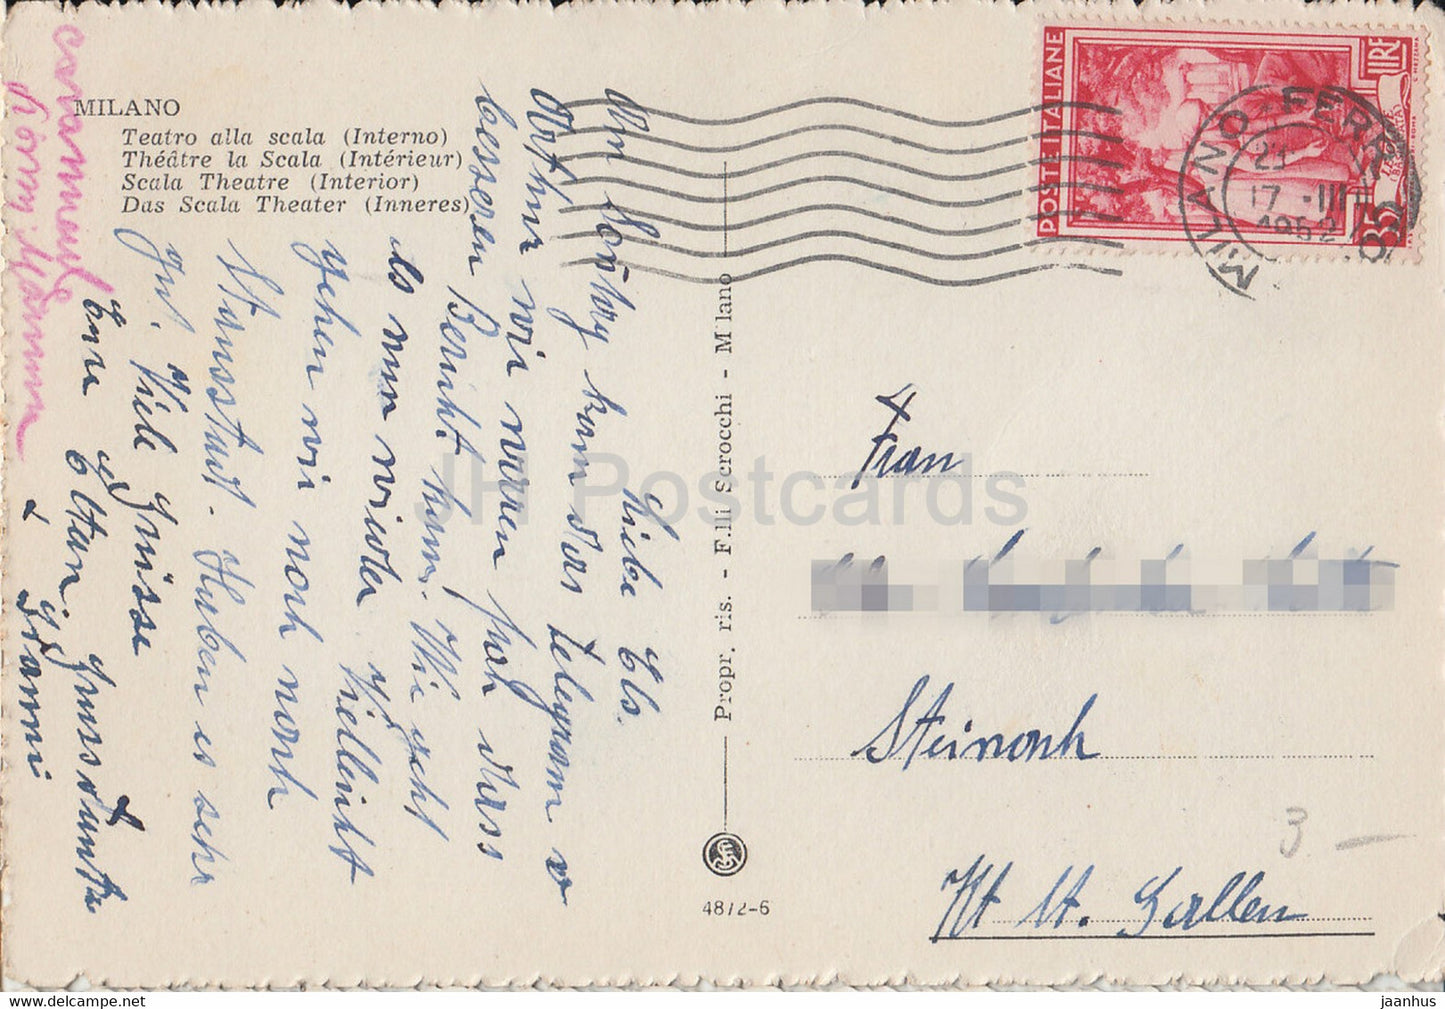 Mailand – Teatro alla Scala – Interno – Schwanensee – Ballett – 1952 – alte Postkarte – Italien – gebraucht